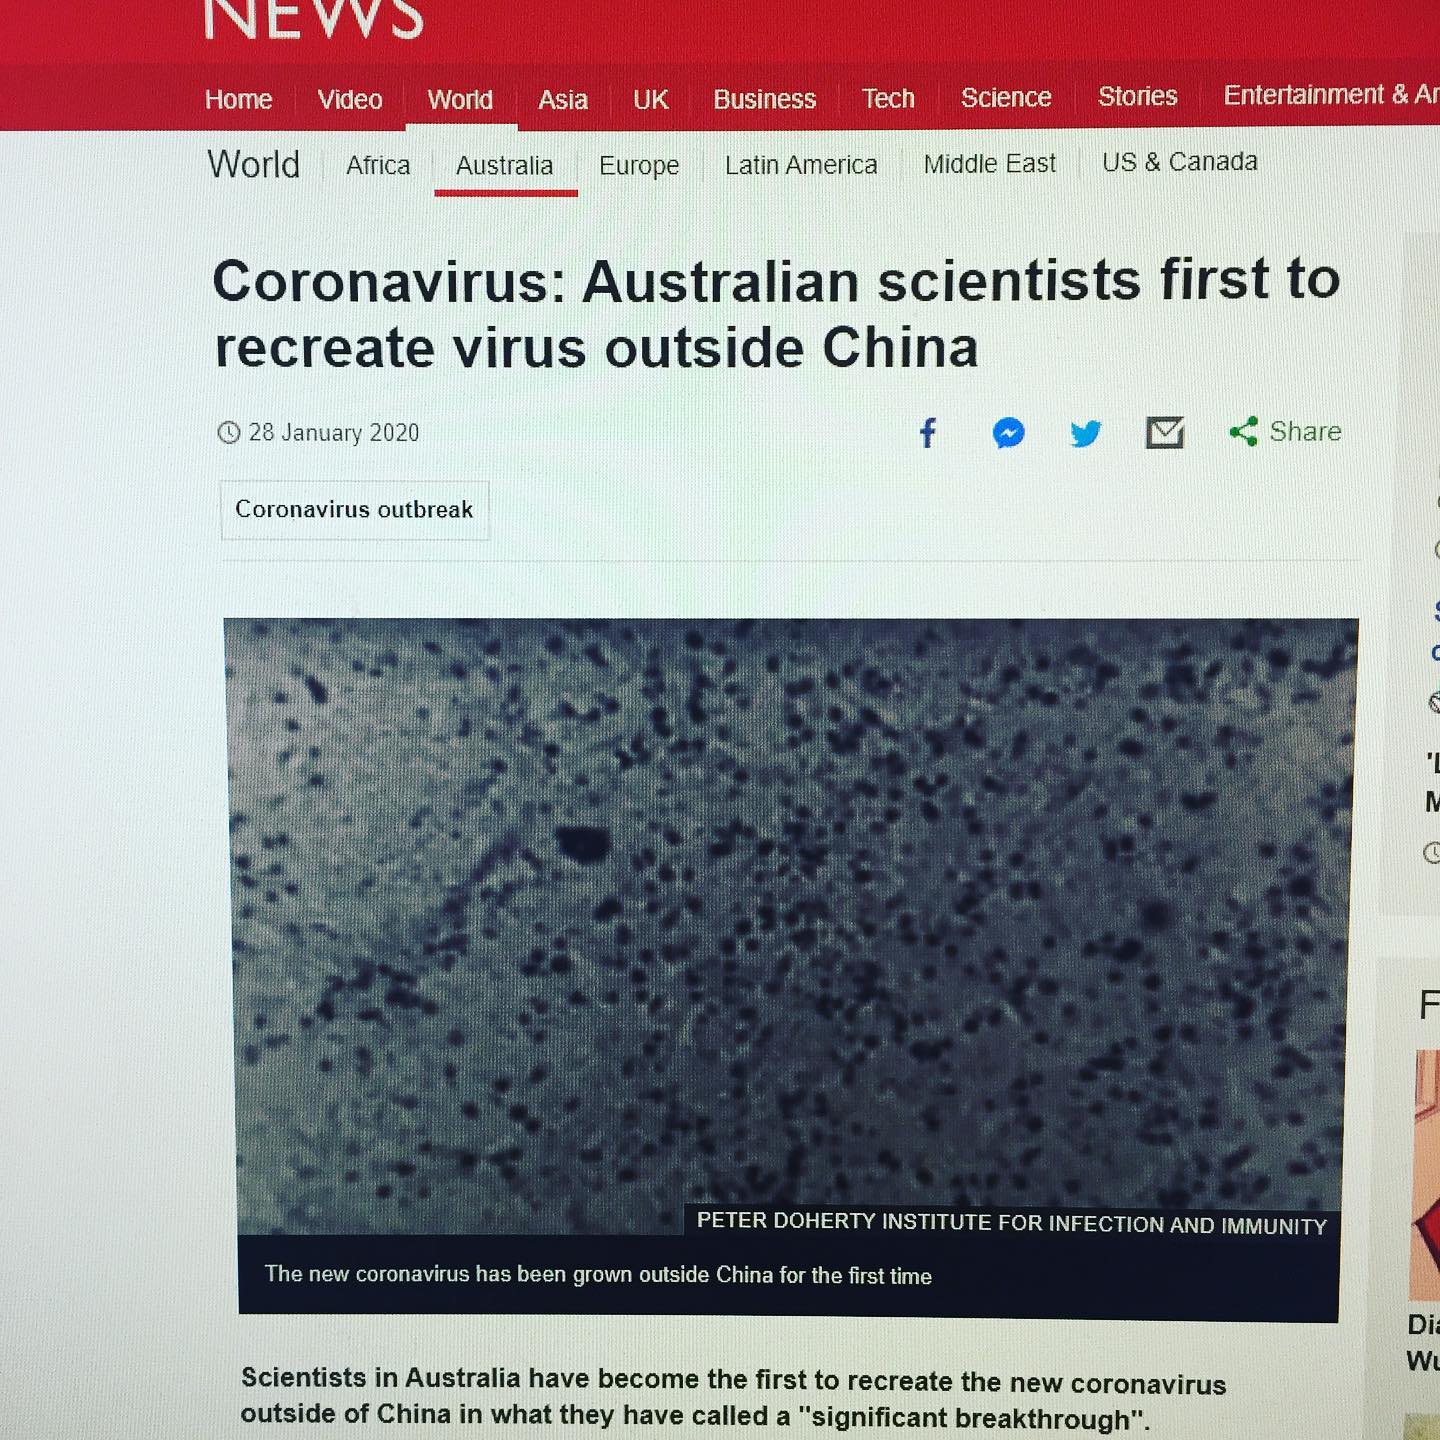 【冷静に、慎重に、】新型コロナウィルスが問題視されています。BBCのニュースによるとオーストラリアの専門機関がウィルスの培養に成功し、治療への大きな第一歩だとのことです。